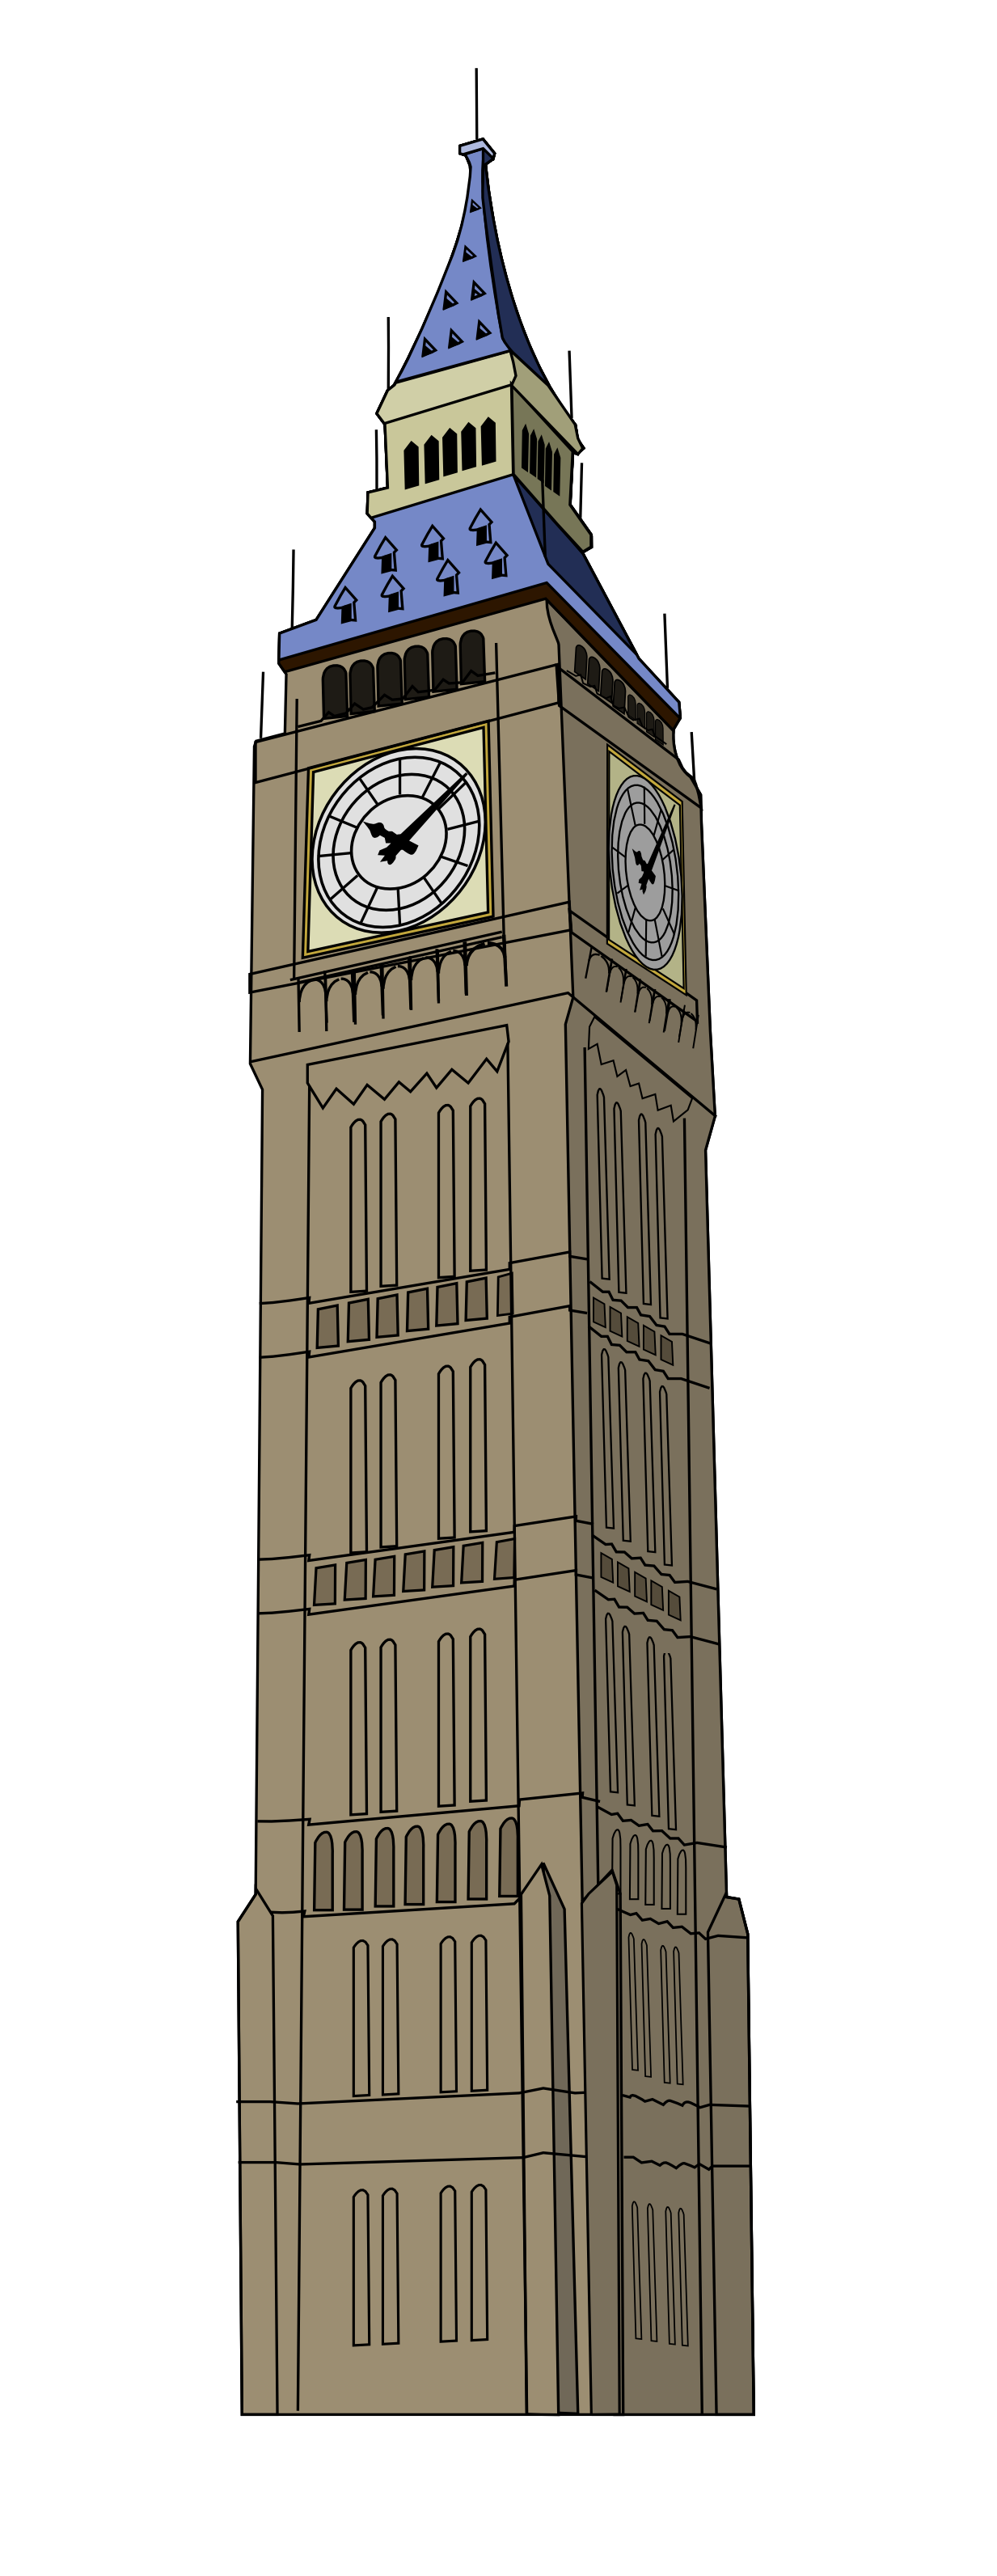 Math homework london big. Tower clipart clocktower